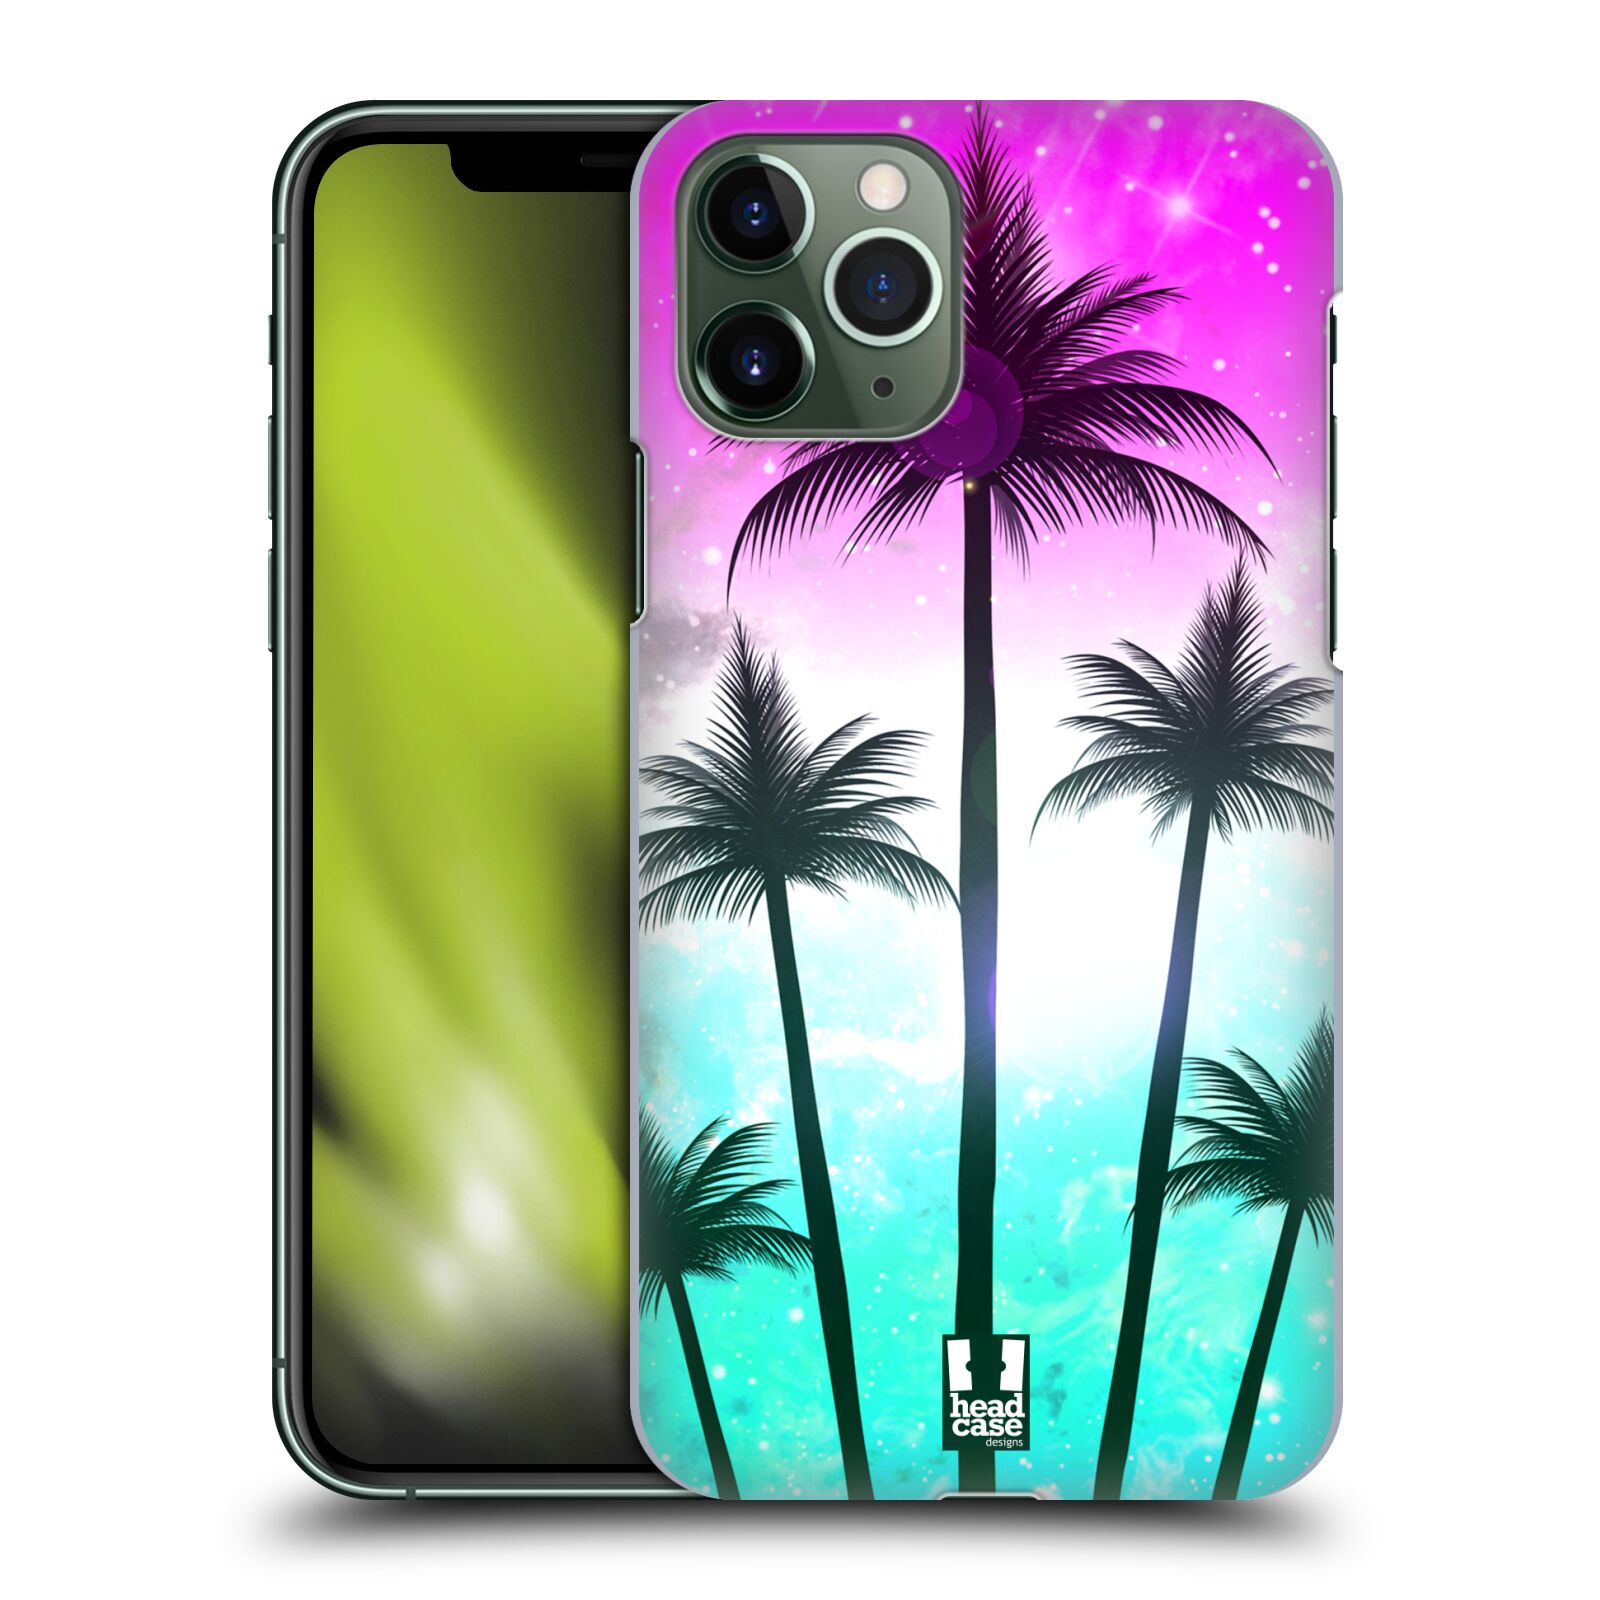 Pouzdro na mobil Apple Iphone 11 PRO - HEAD CASE - vzor Kreslený motiv silueta moře a palmy RŮŽOVÁ A TYRKYS